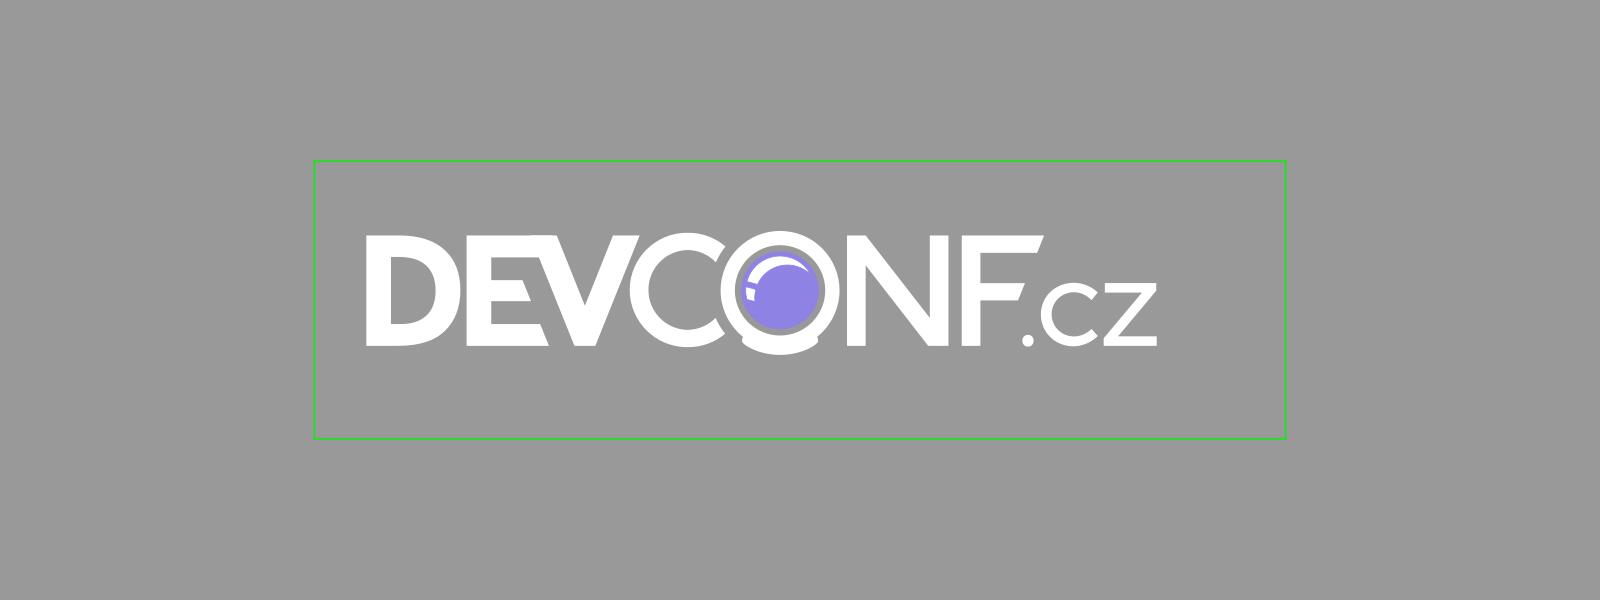 DevConf. CZ 2022 terá lugar o 28 e 29 de xaneiro